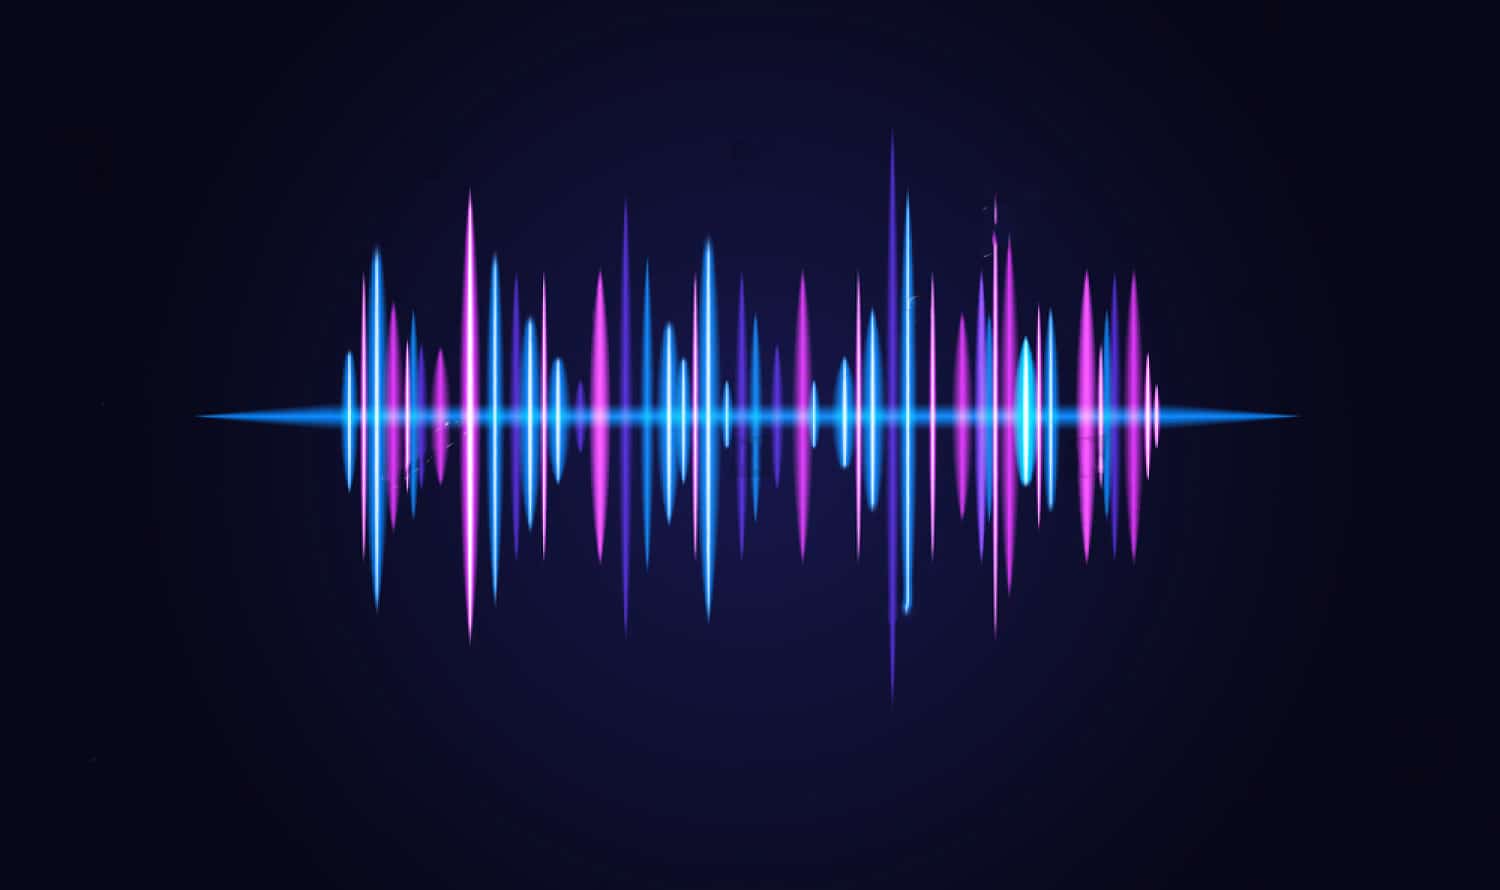 เสียงดัง หมายถึง เสียงที่มีความดังจนอาจก่อให้เกิดอันตรายต่อระบบการได้ยิน